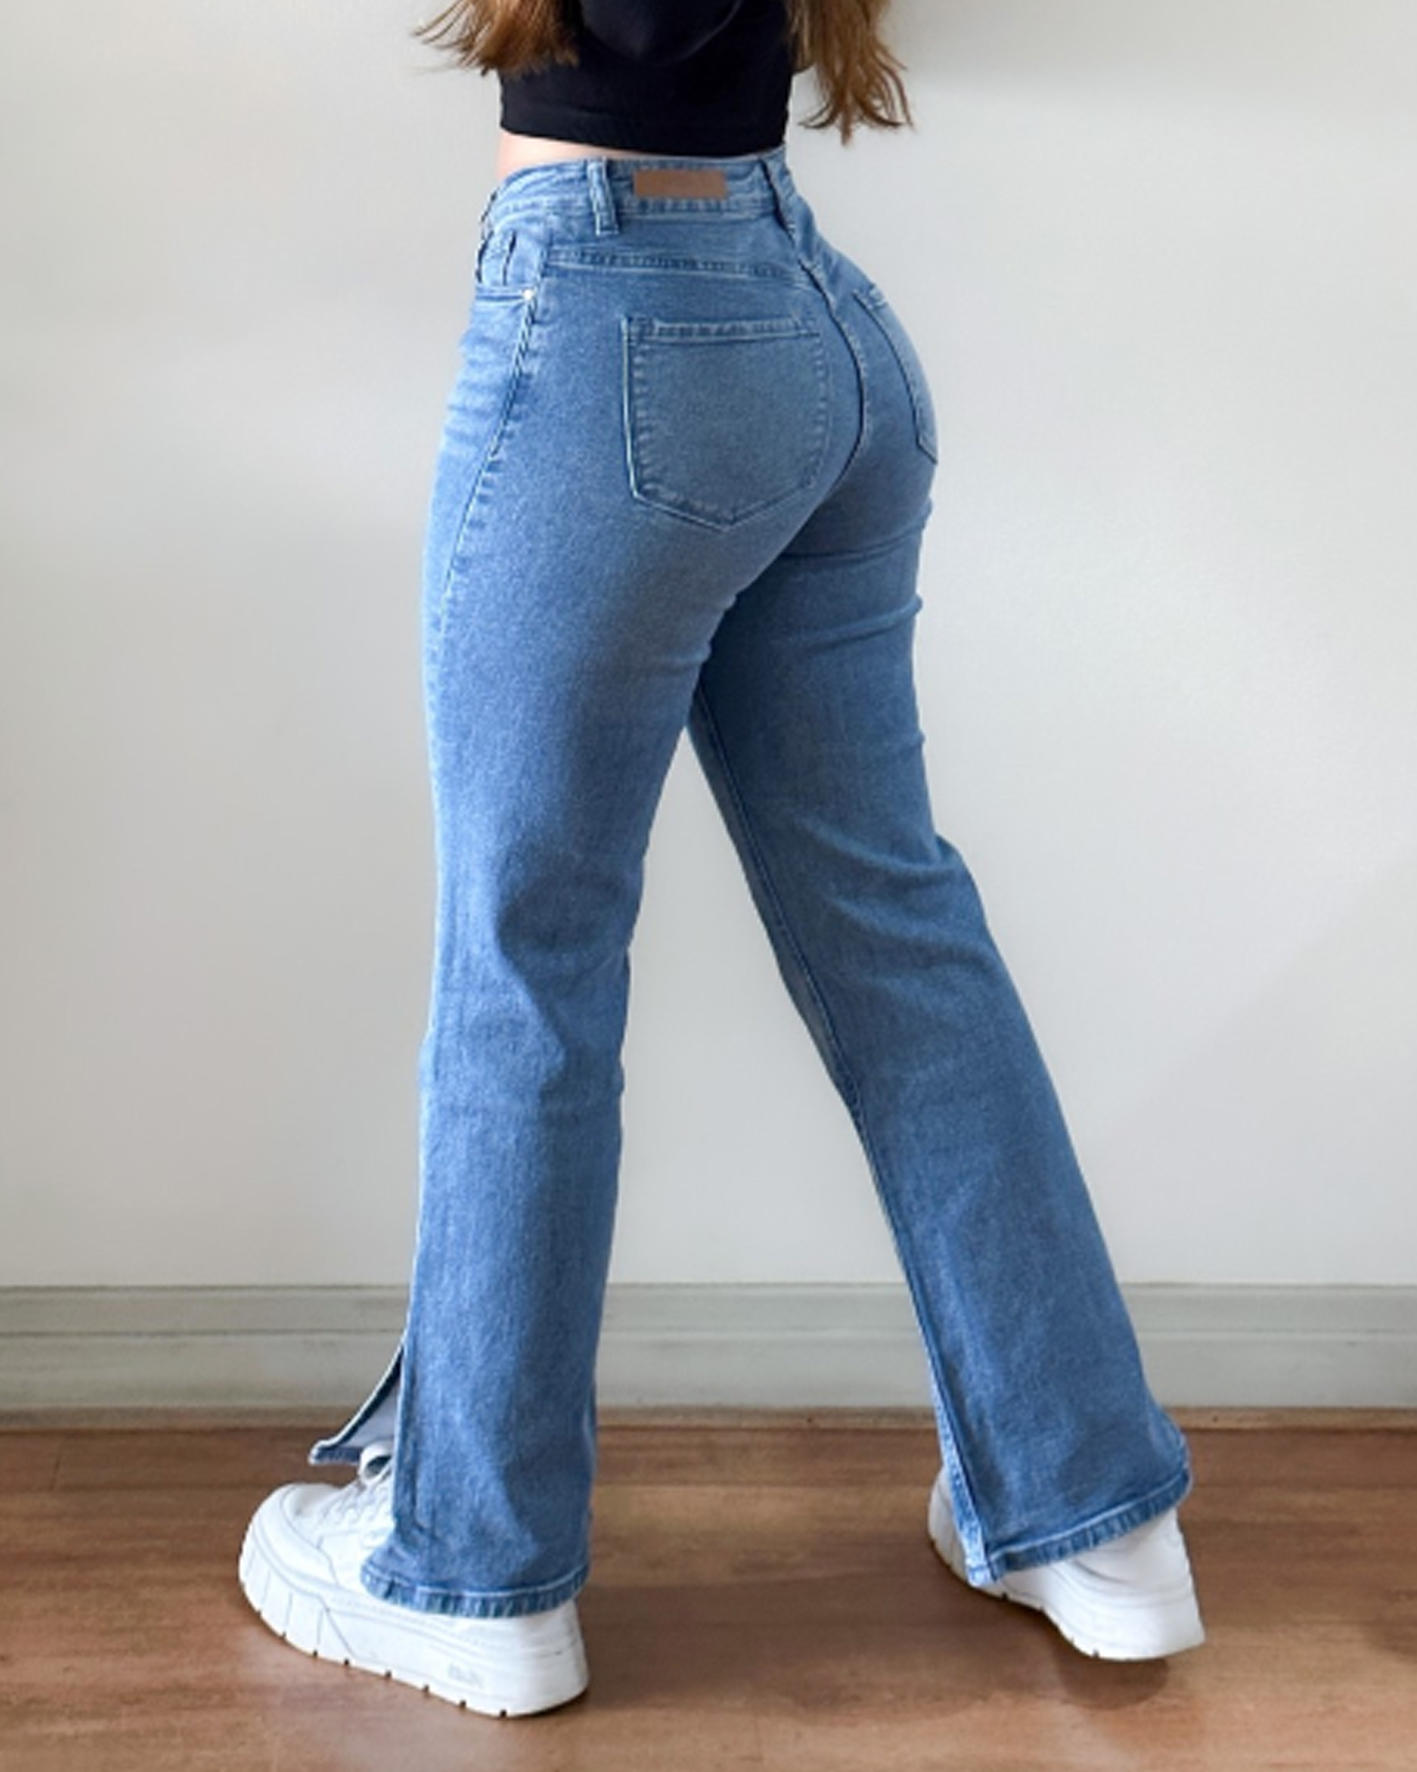 jeans con faka interna orma superrrr🤤🤤🤤🤤🤤💯 disponible todas las